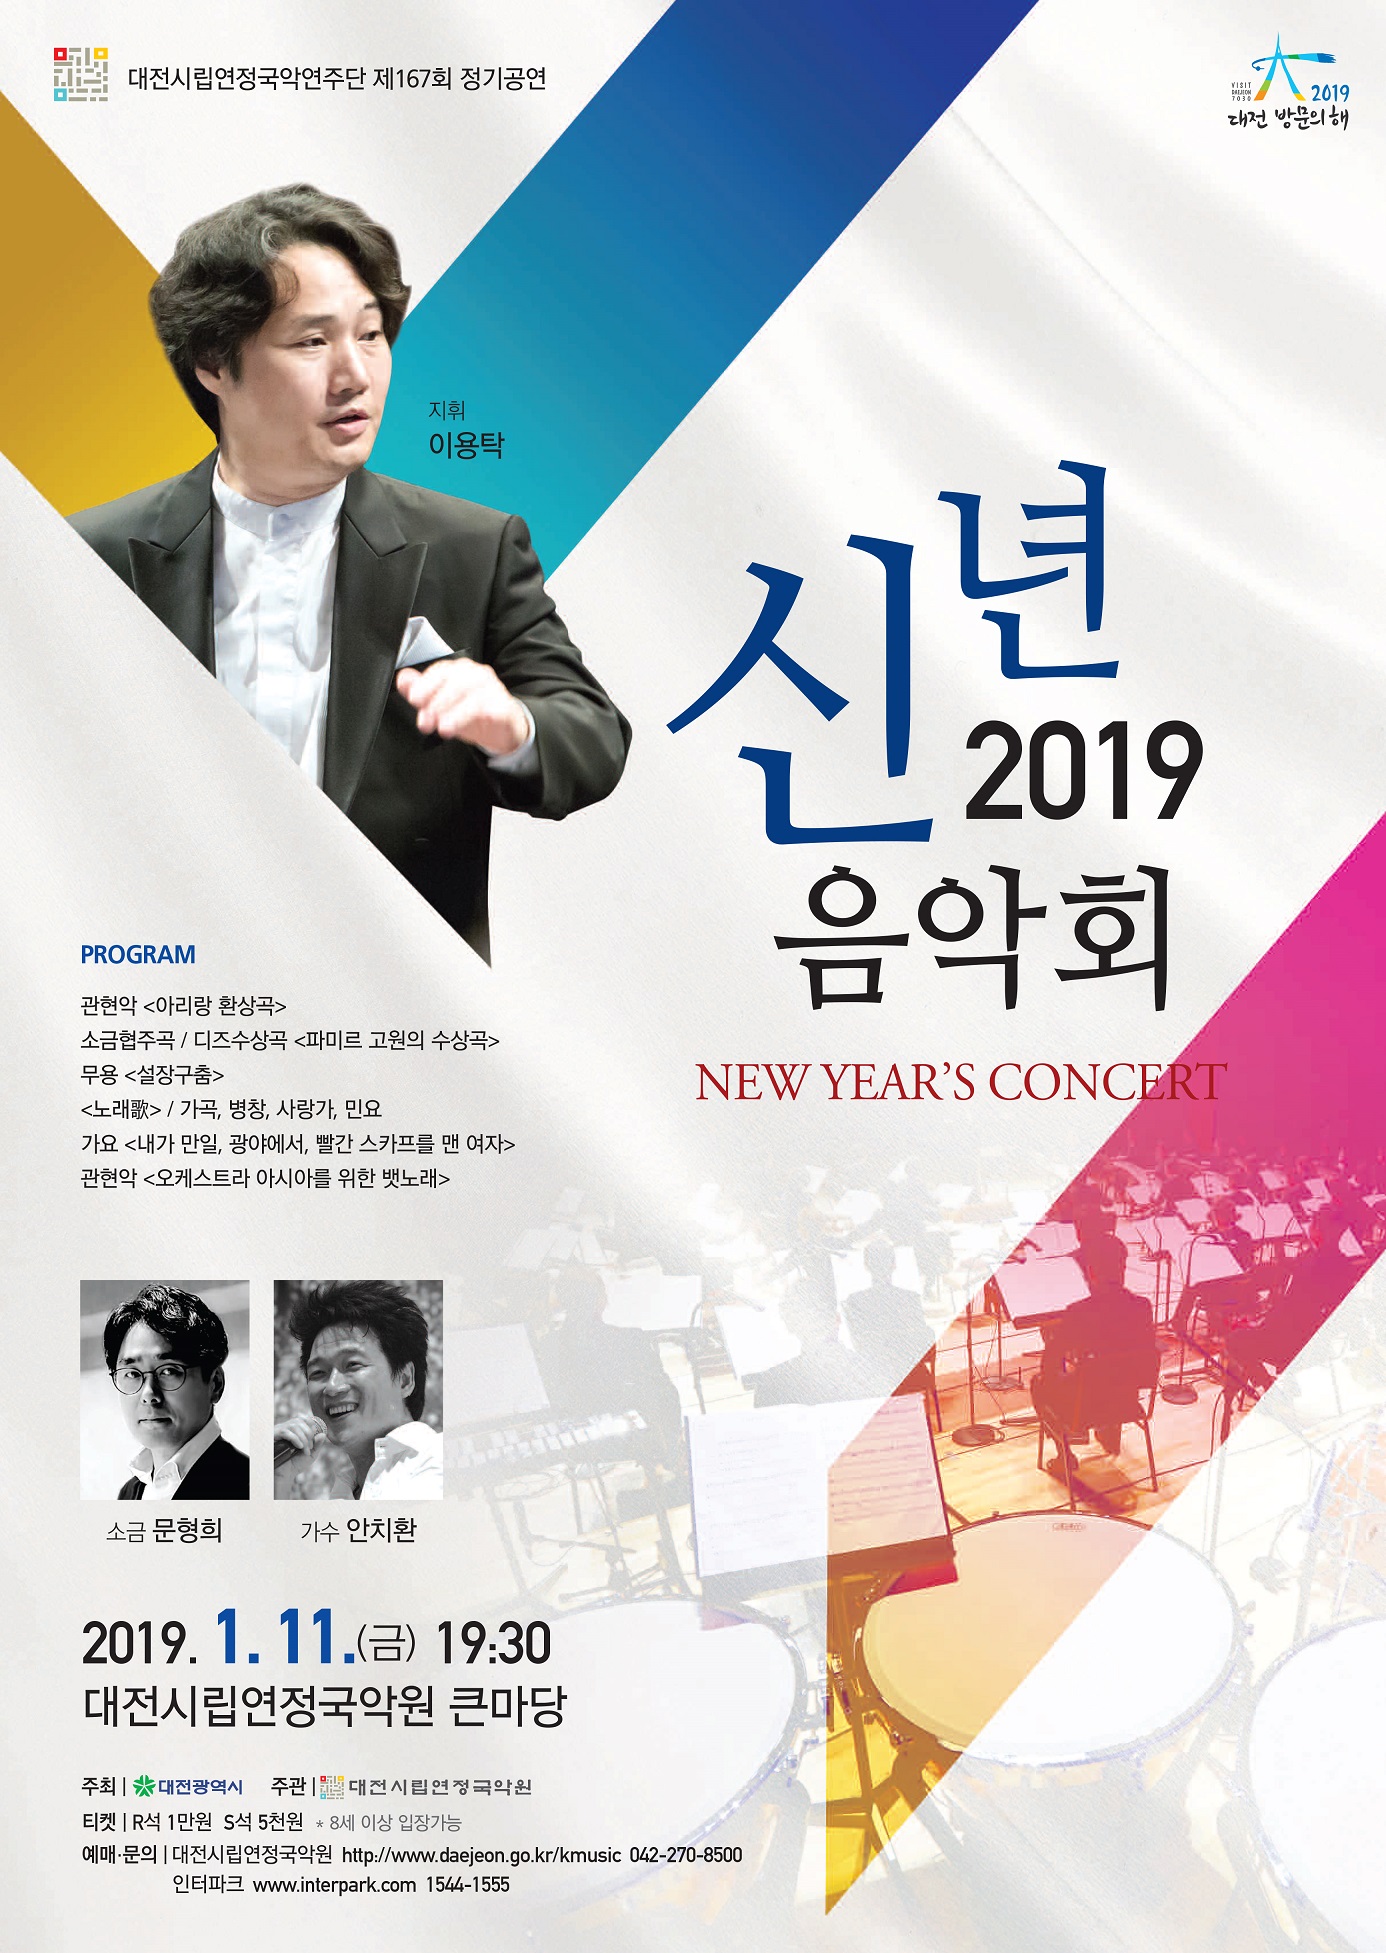 시립연정국악연주단과 함께하는 2019 신년음악회